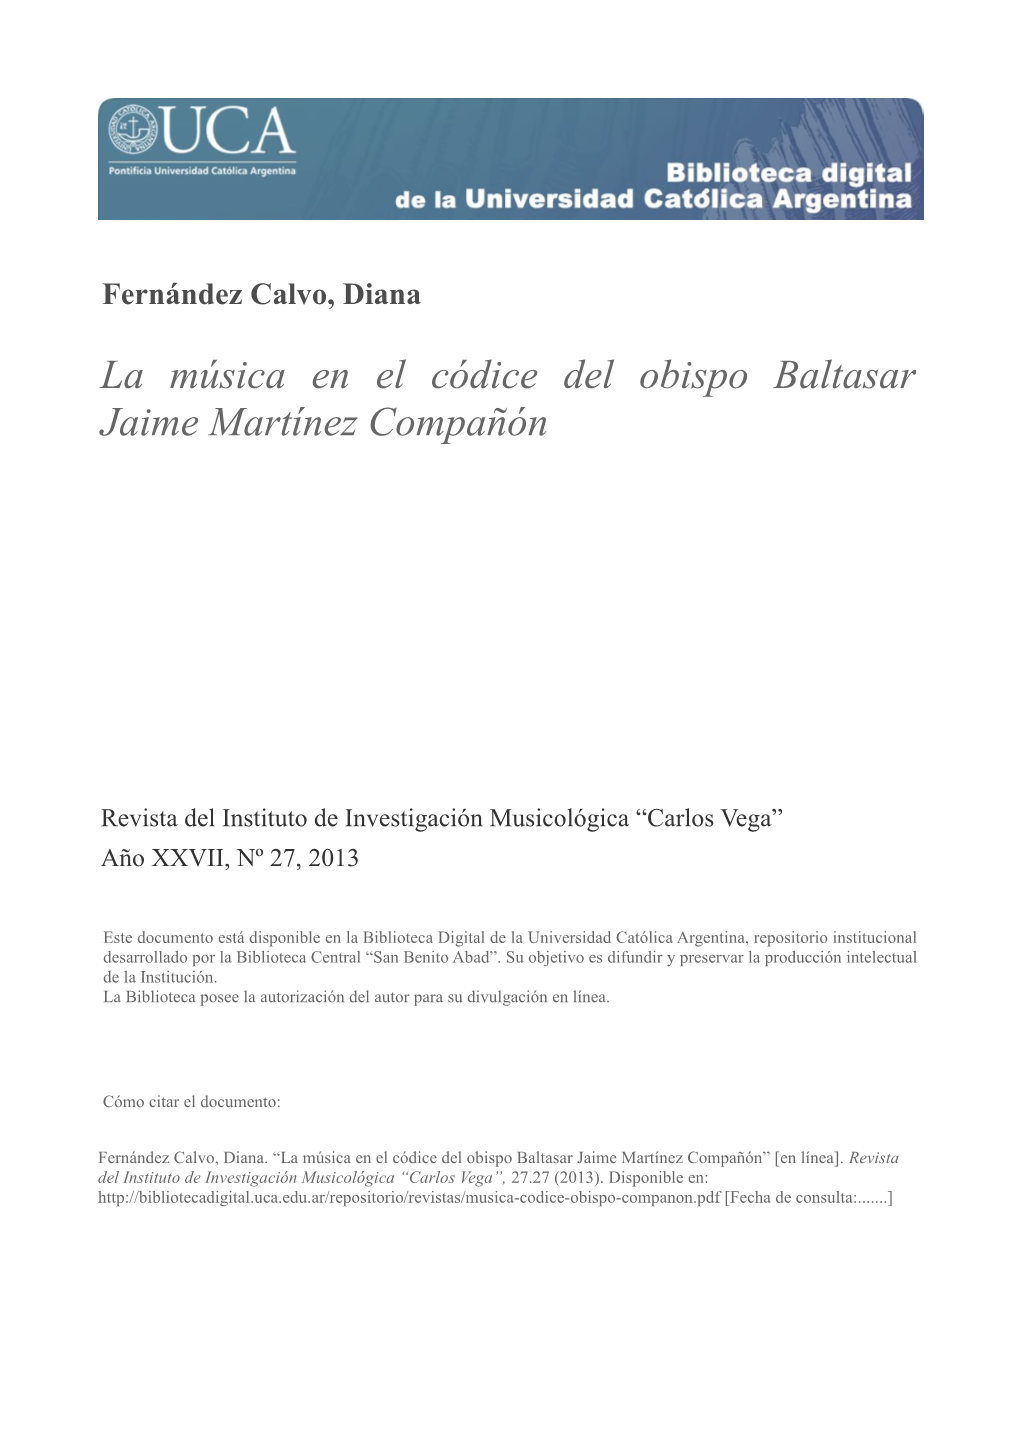 La Música En El Códice Del Obispo Baltasar Jaime Martínez Compañón